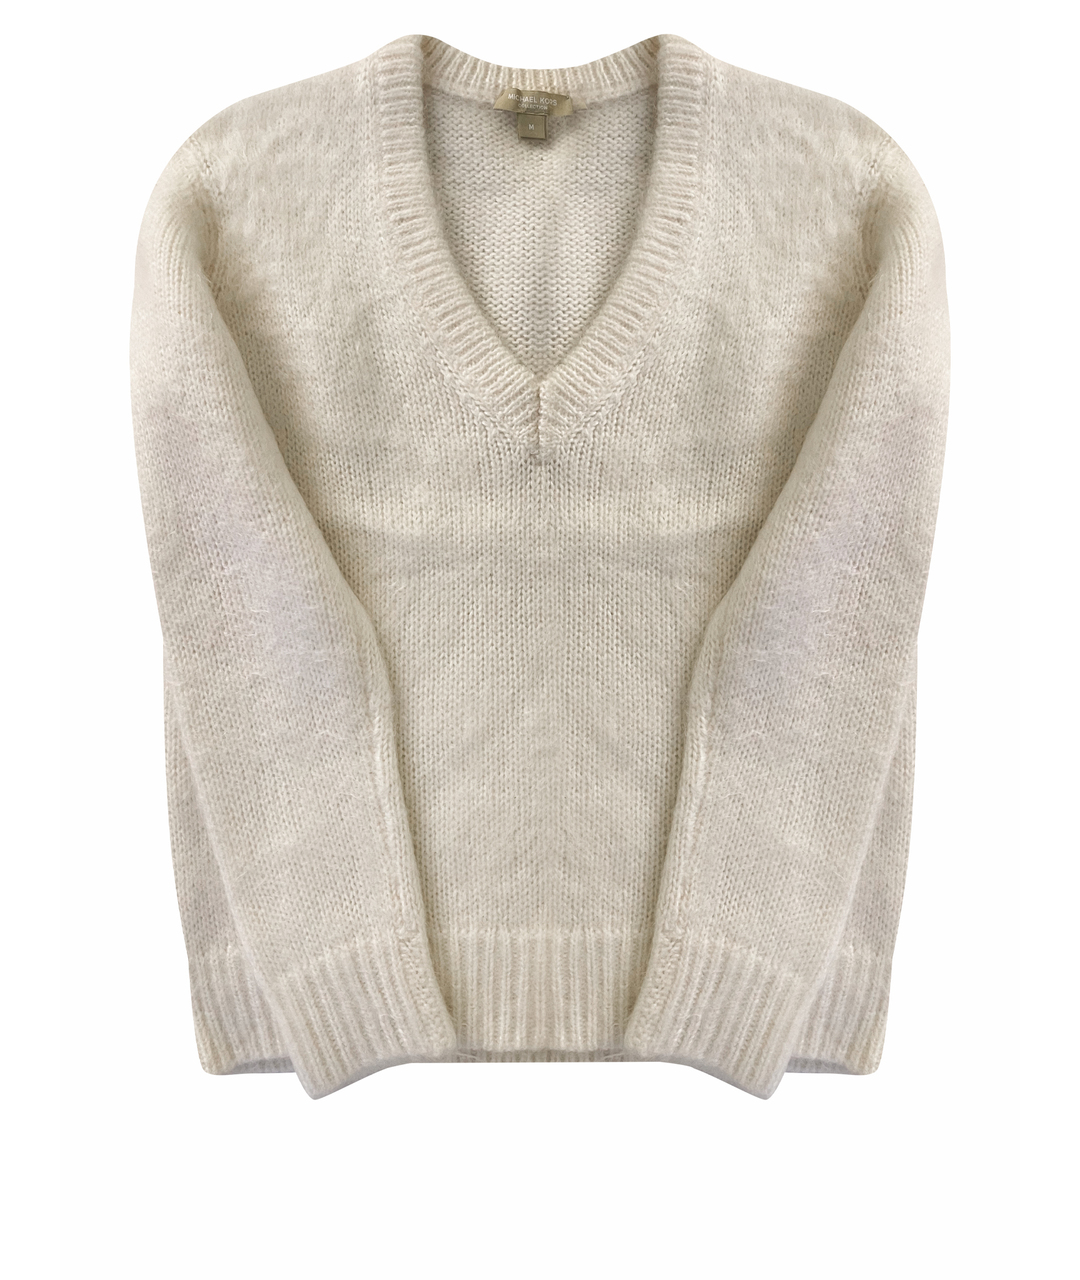 MICHAEL KORS COLLECTION Белый шерстяной джемпер / свитер, фото 1